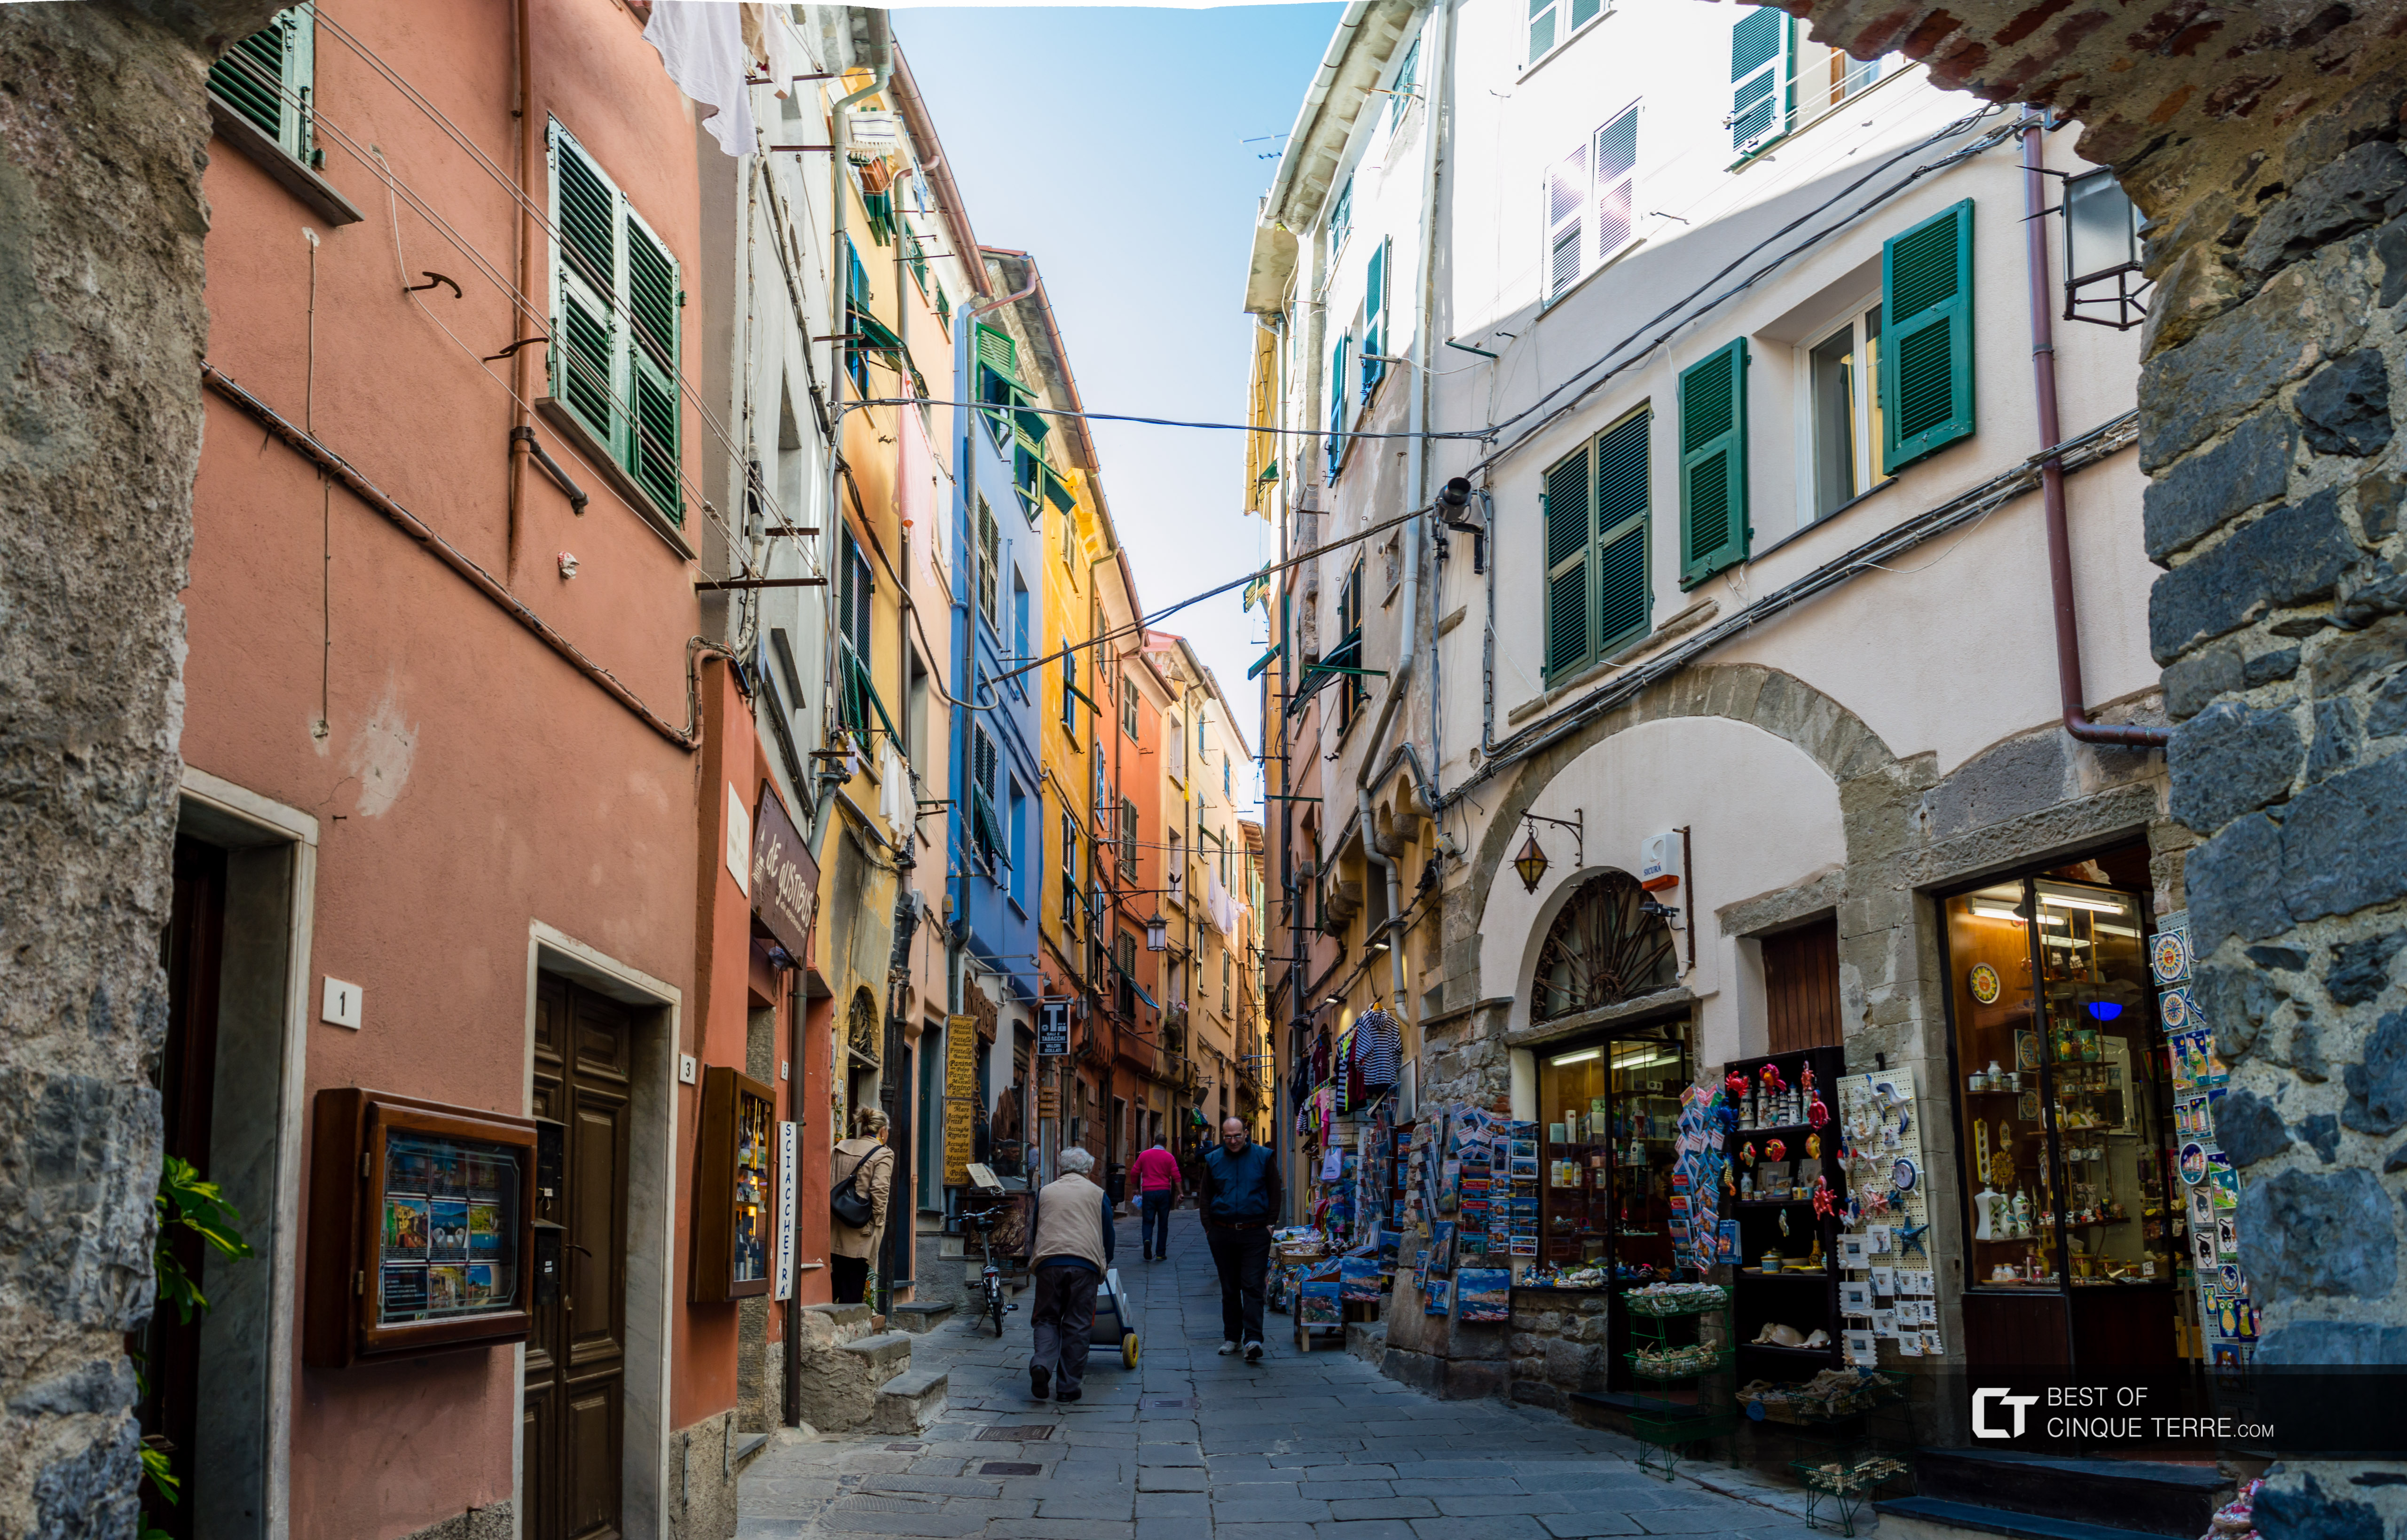 The main street, Portovenere, Italy